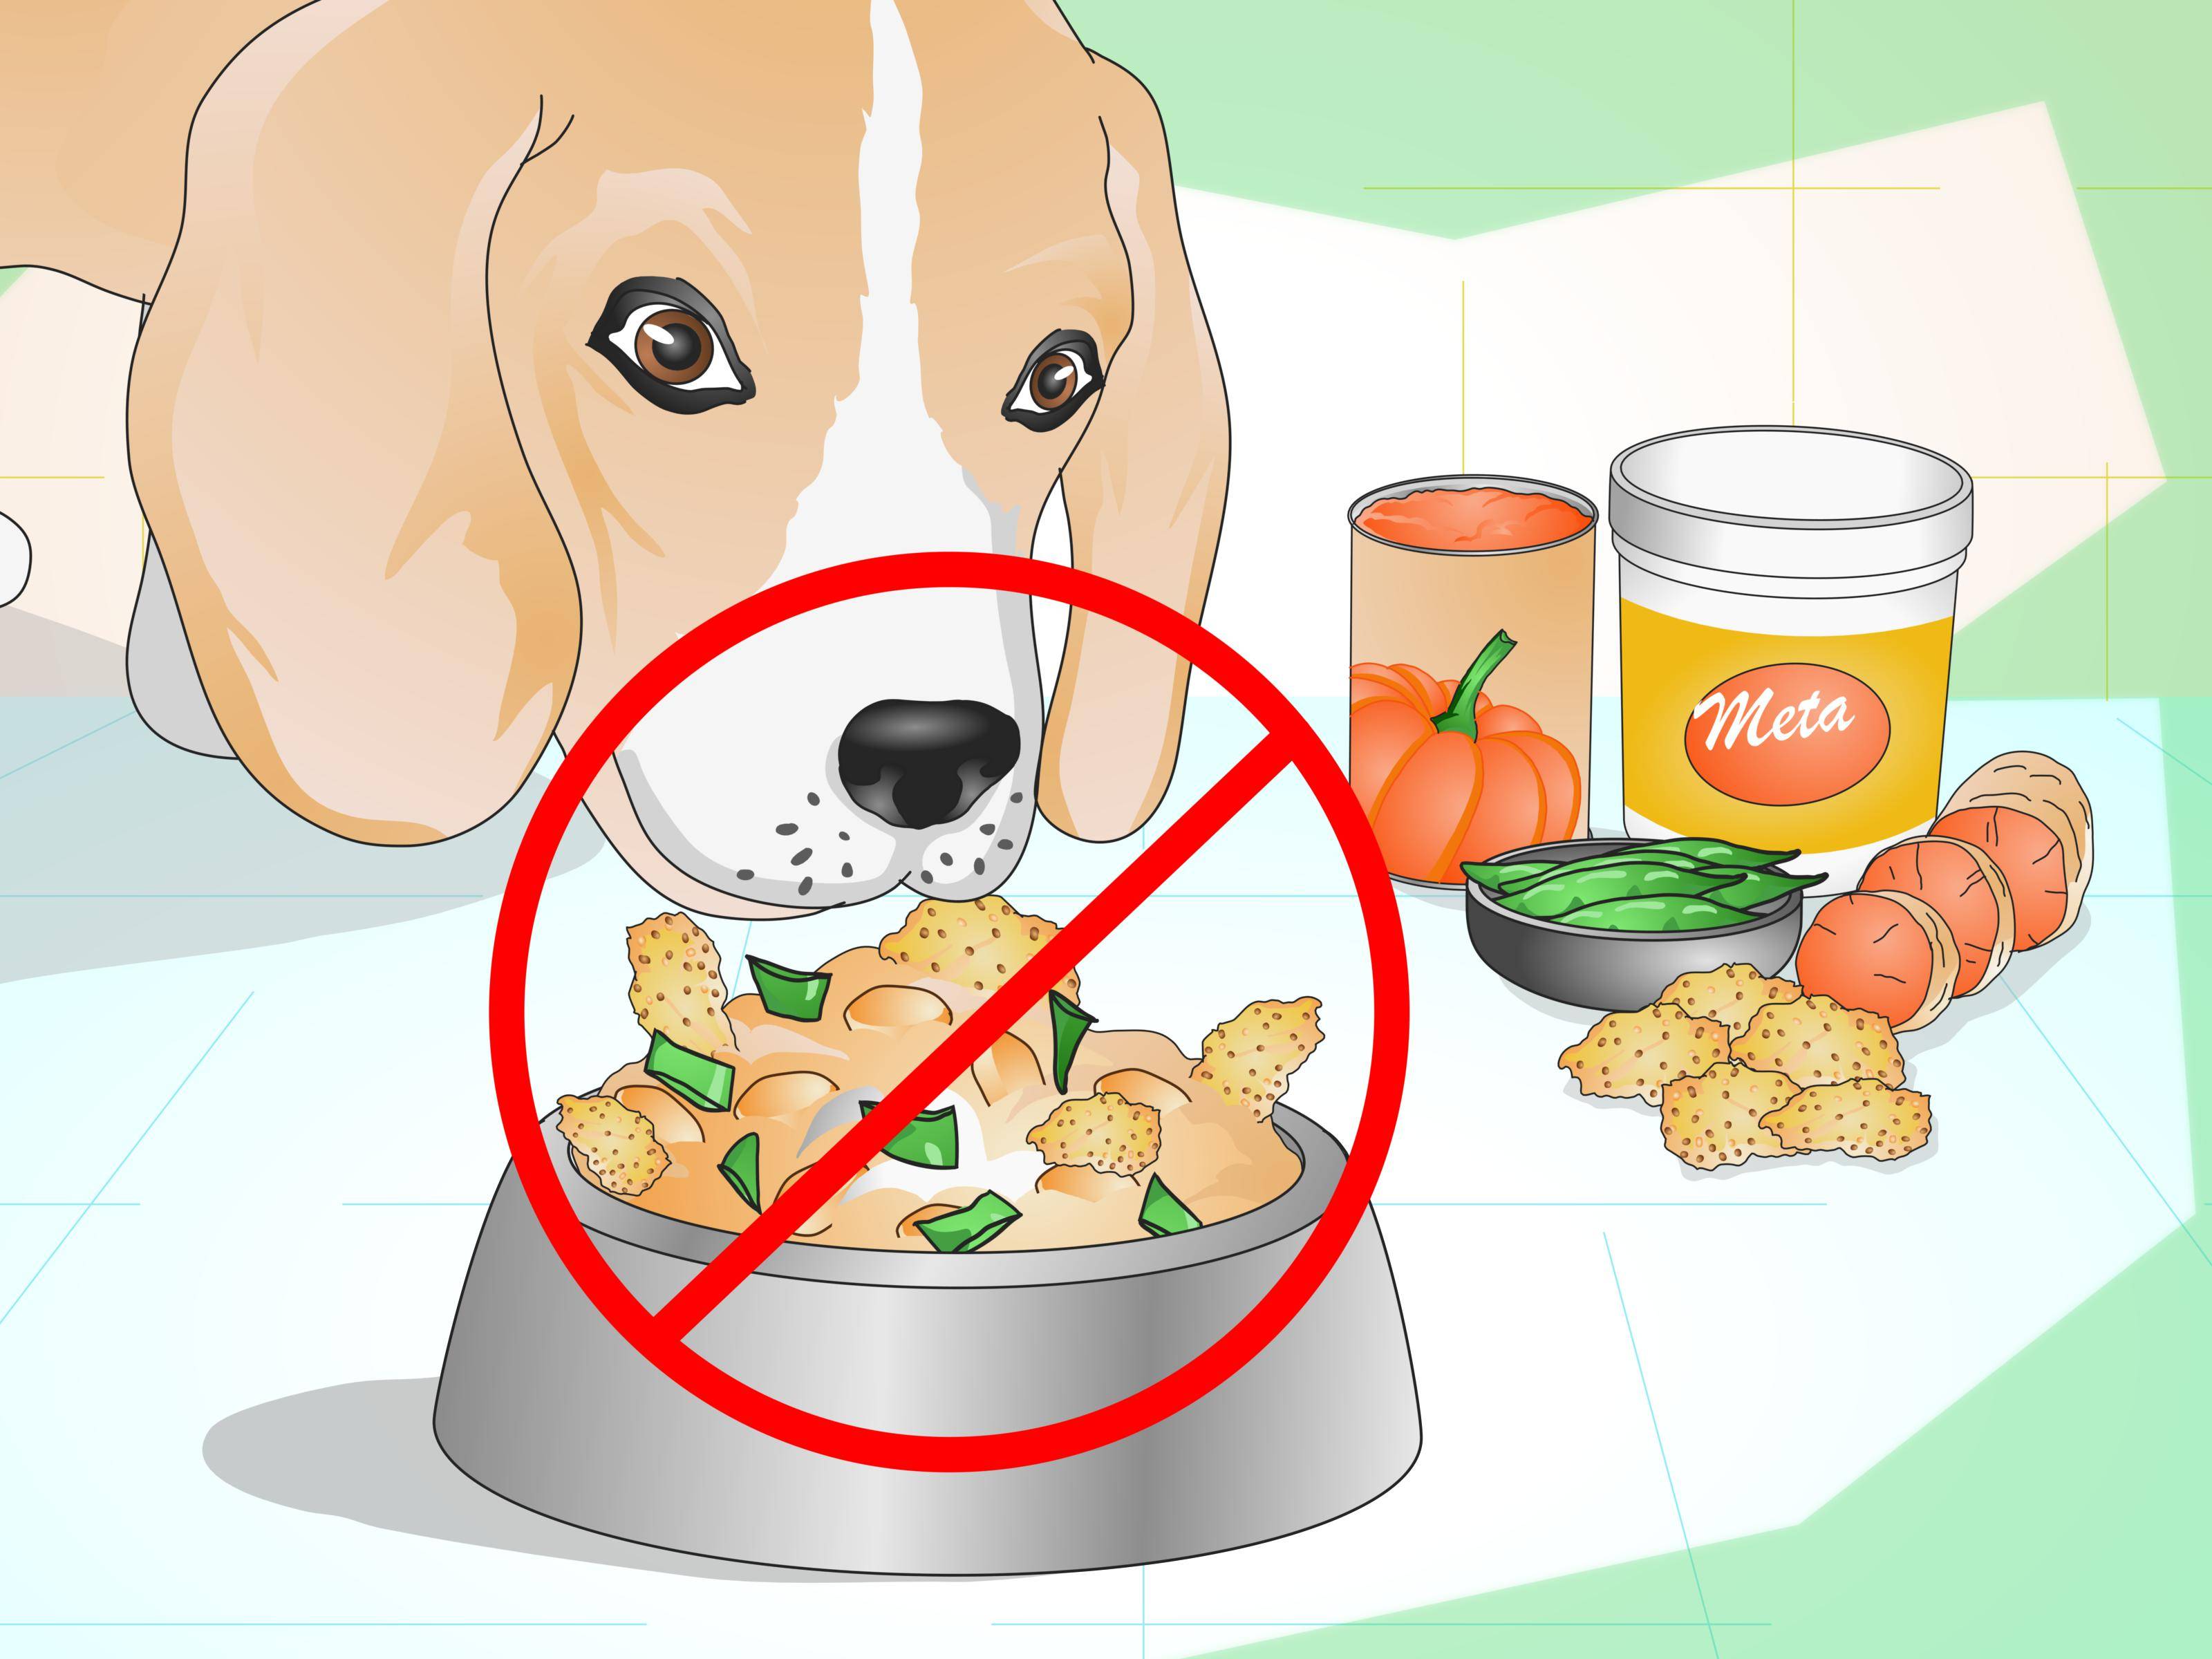 Субпродукты для собаки: какие давать, как часто и в каком количестве, чтобы не было вреда. наиболее ценные субпродукты и особенности их скармливания